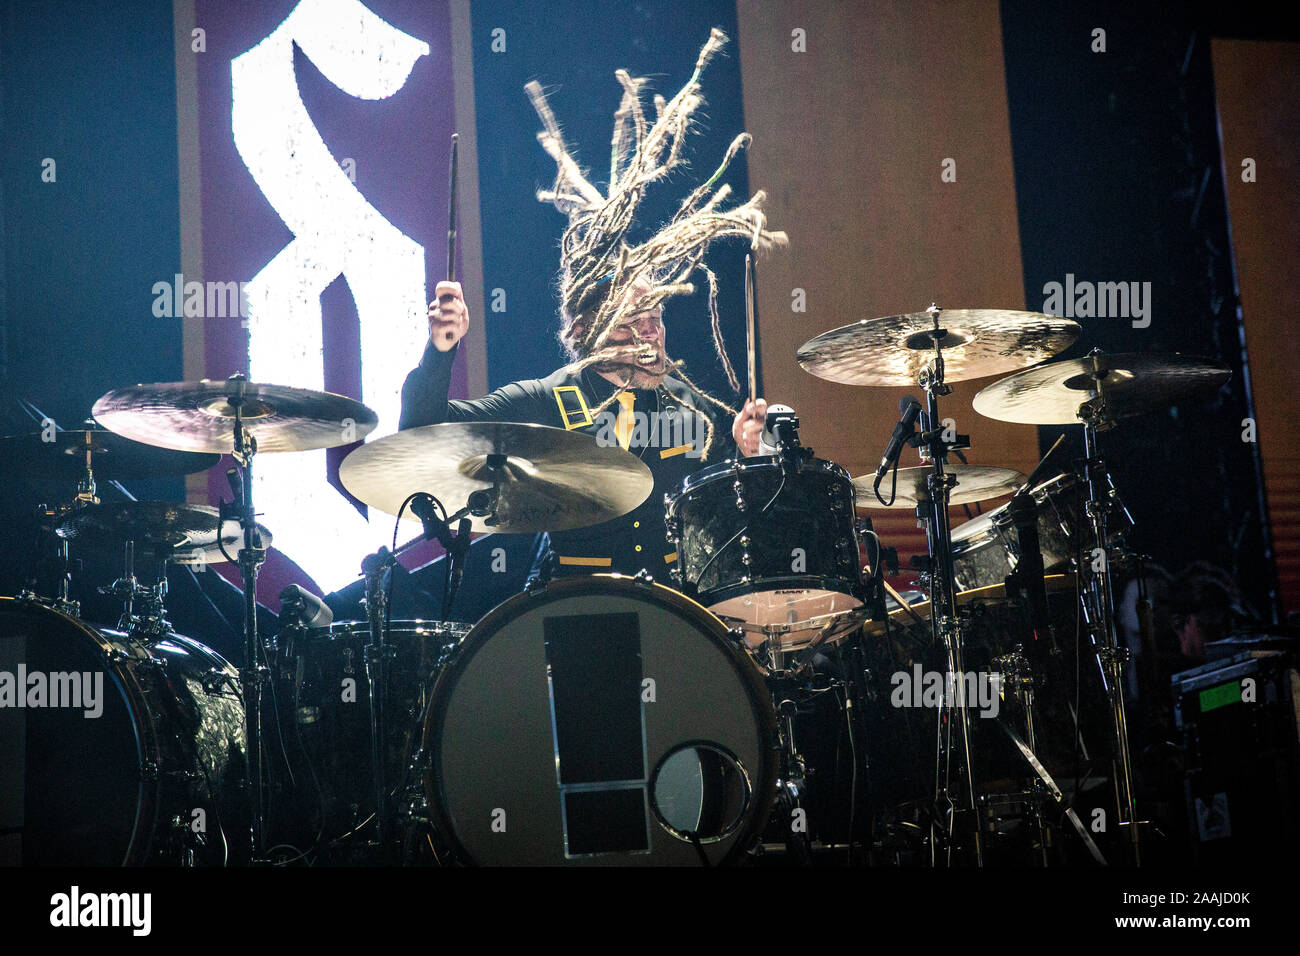 Oslo, Norvegia. 17th, novembre 2019. La American hard rock band Shinedown esegue un concerto dal vivo a Sentrum scena in Oslo. Qui il batterista Barry Kerch è visto dal vivo sul palco. (Photo credit: Gonzales foto - Terje Dokken). Foto Stock